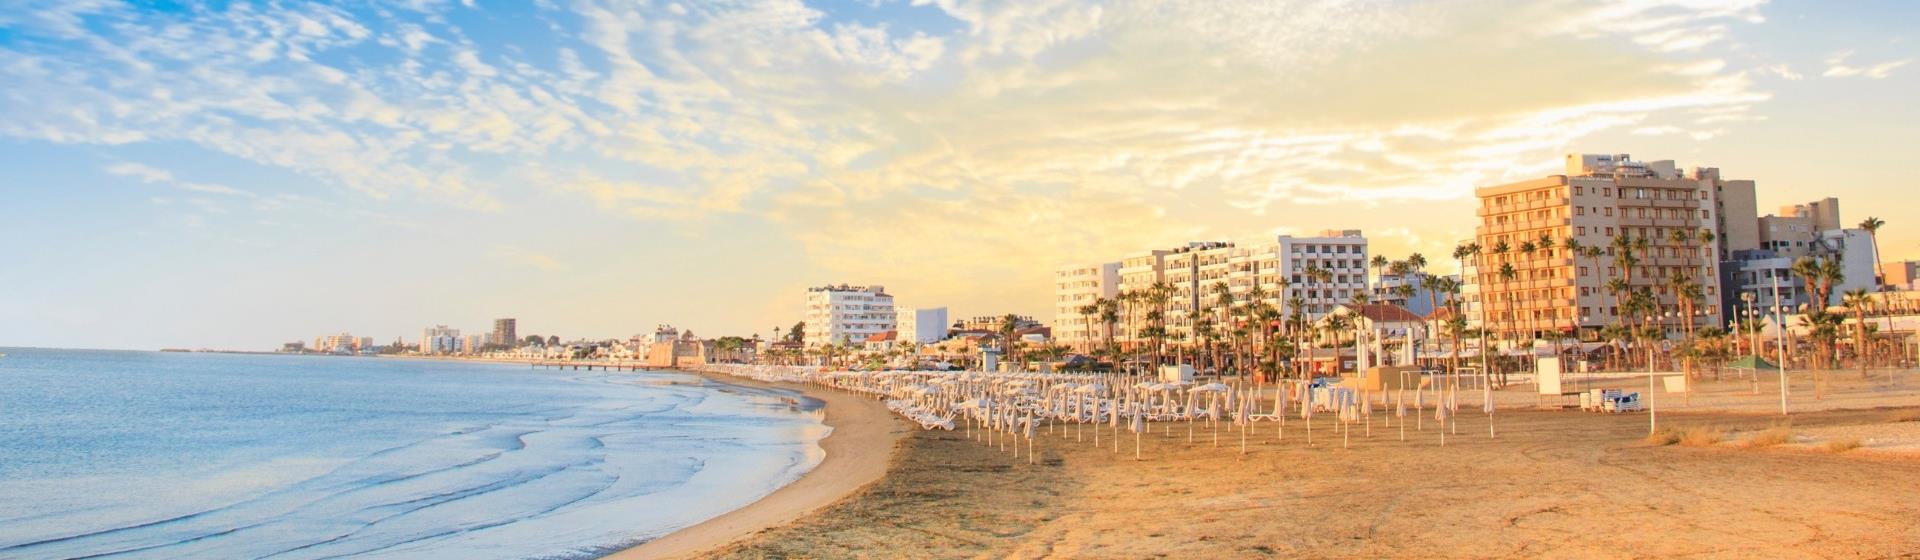 Holidays to Larnaca